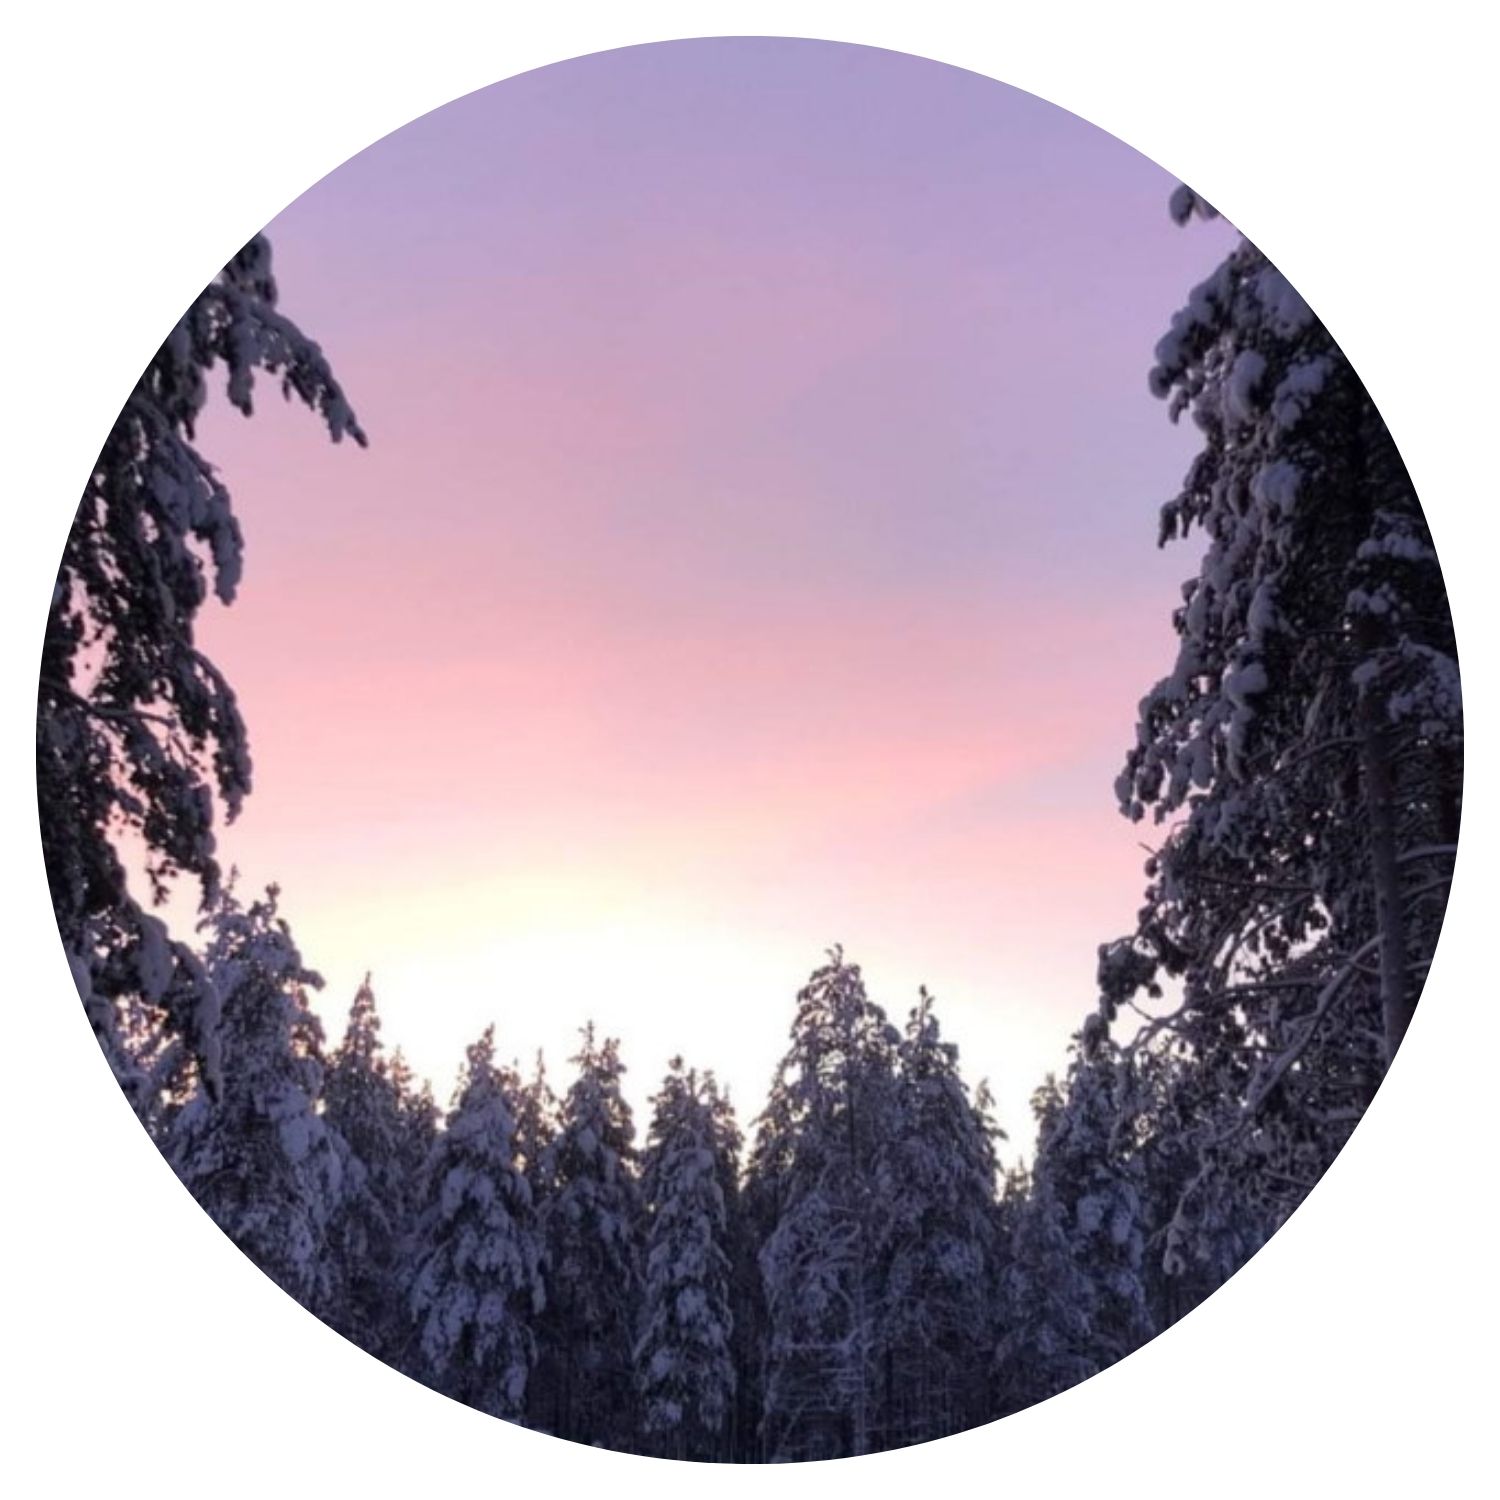 Une photo capturée lors d'un lever de soleil depuis le cœur d'une forêt couverte de neige en Finlande, avec une vue sur les pointes des sapins et un ciel aux teintes violet et orangé.